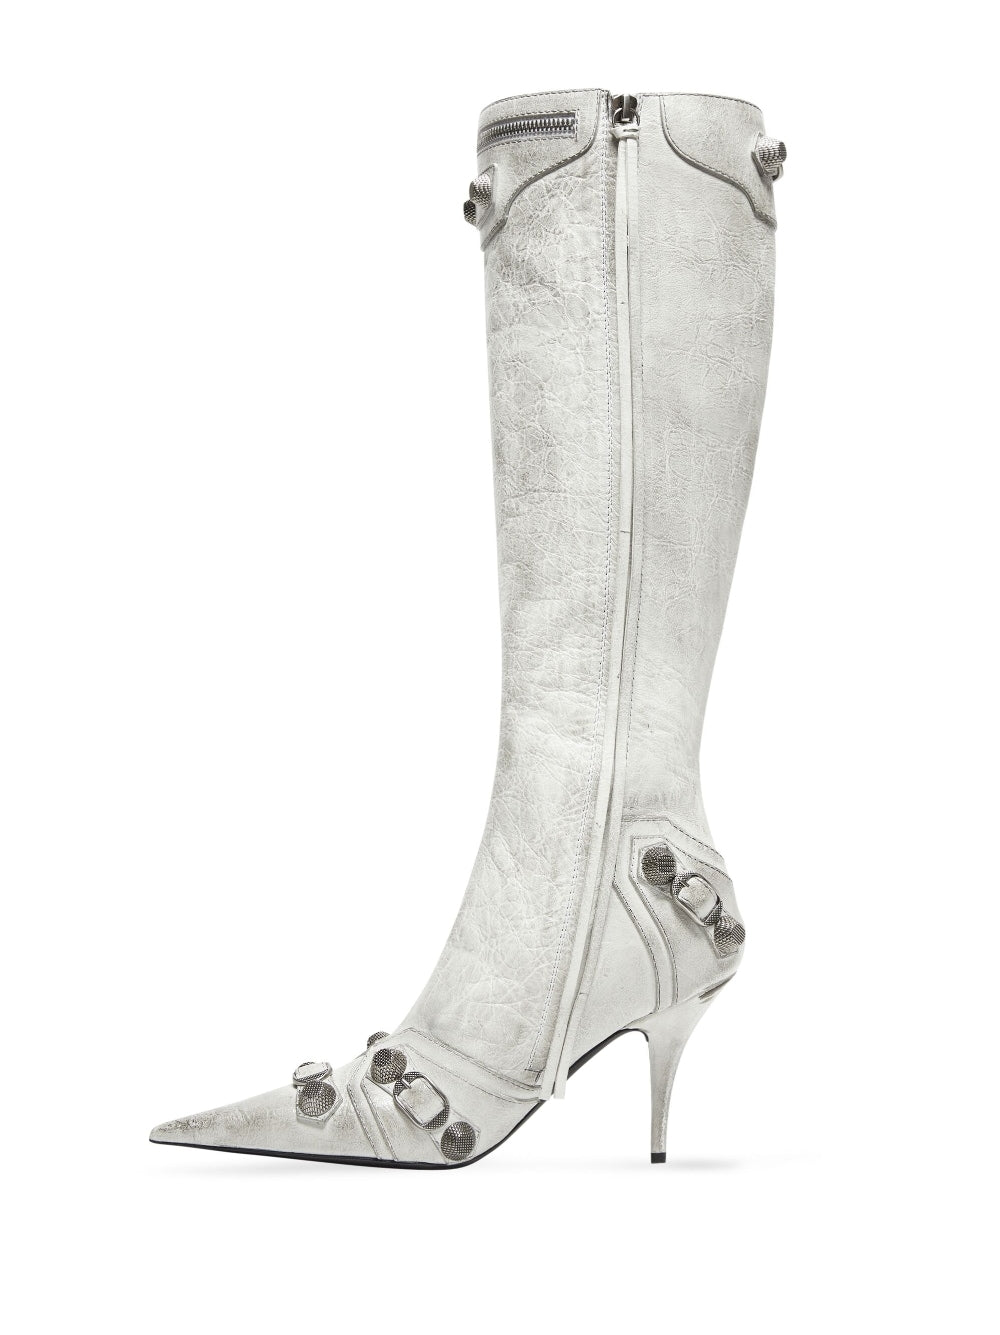 Balenciaga Boots White